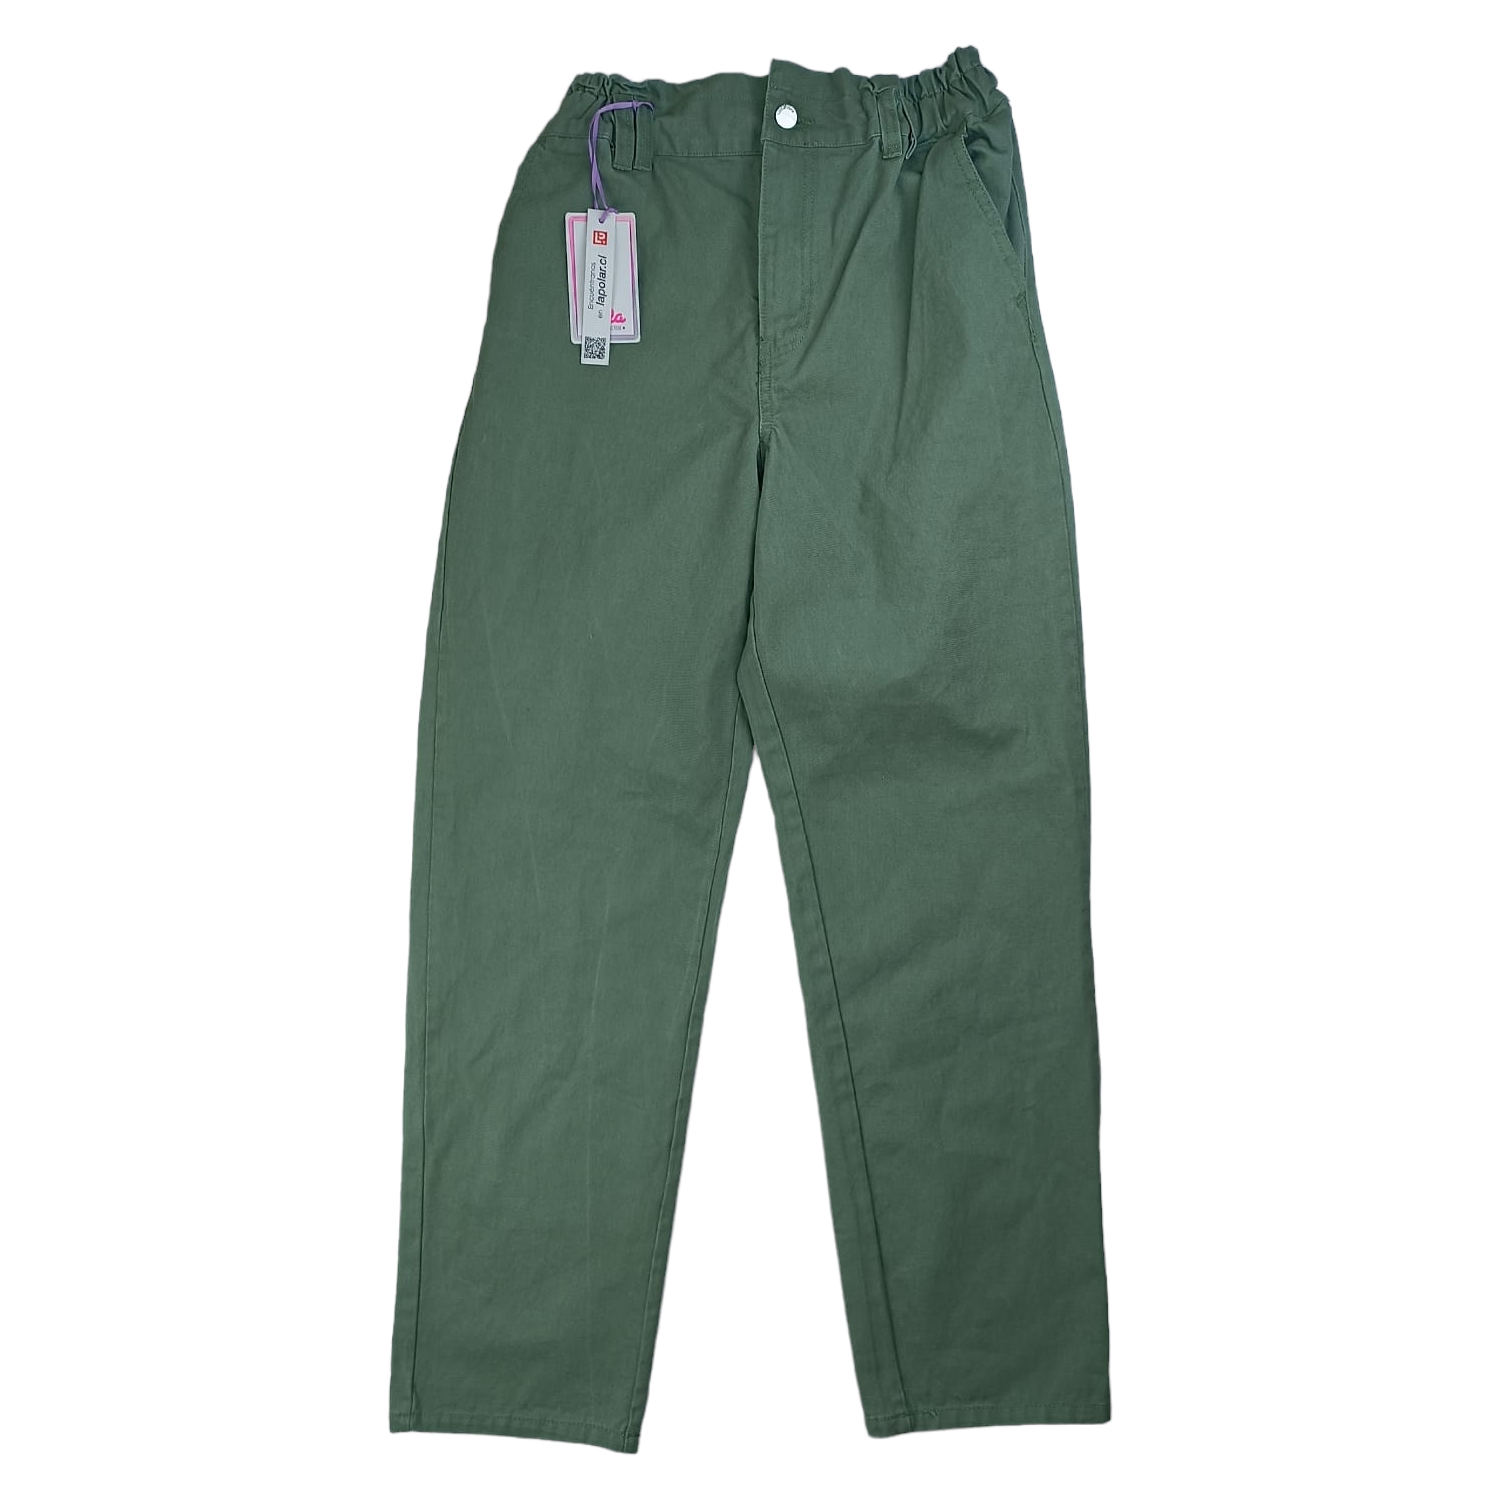 Pantalon verde Nuevo con etiqueta